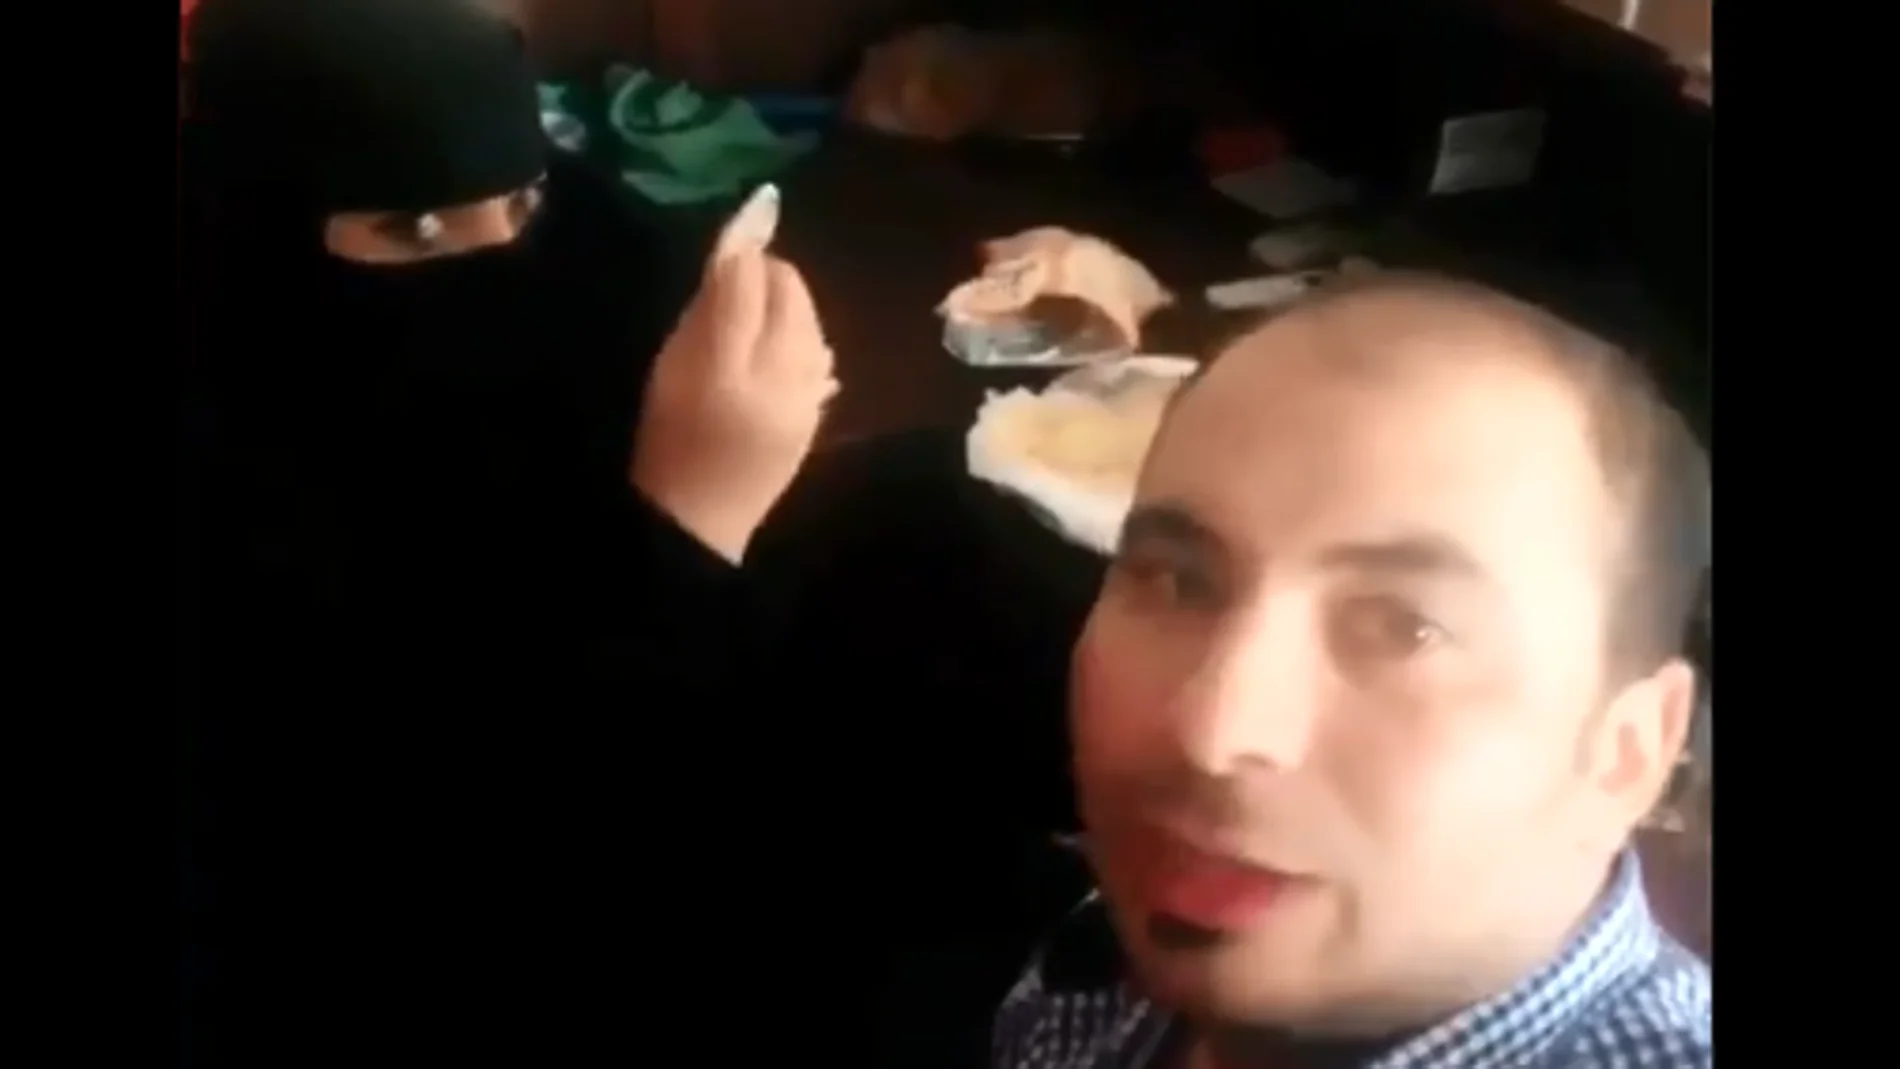 Captura del vídeo en el que el trabajador desayuna con una compañera